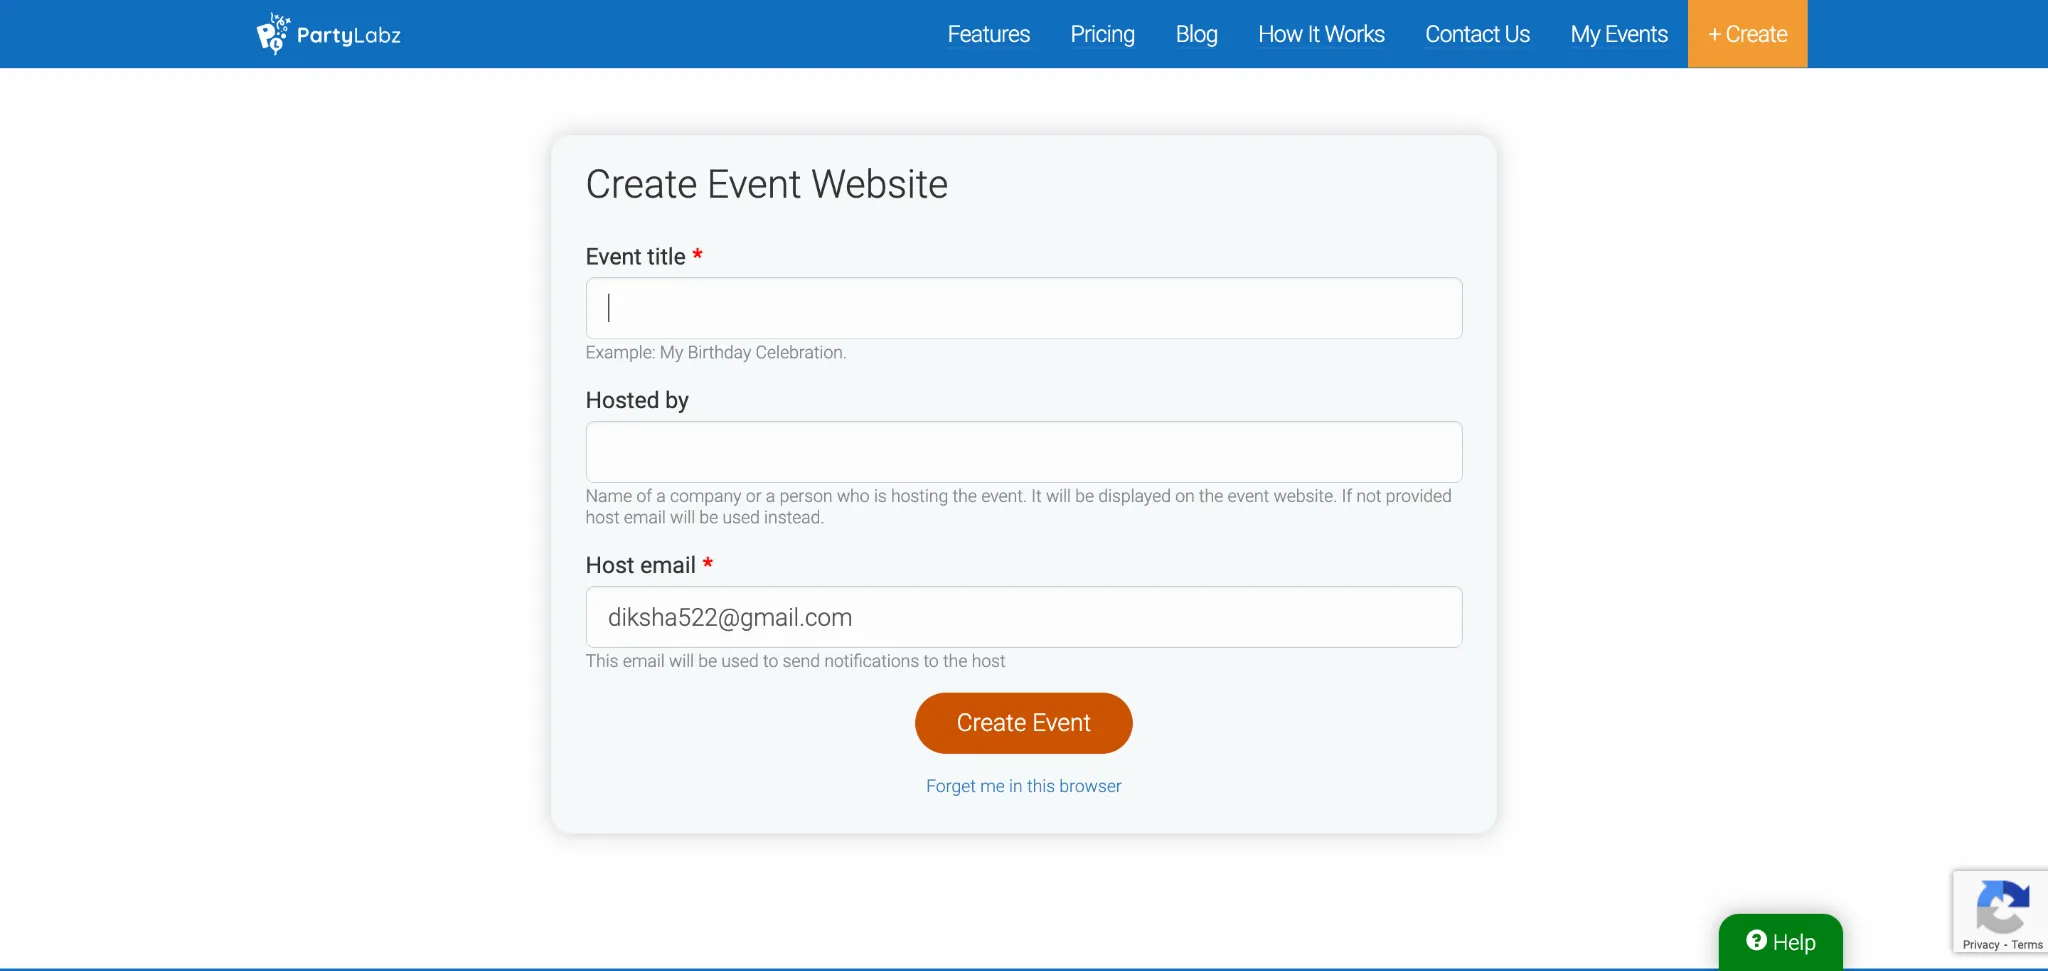 Create an Event Website